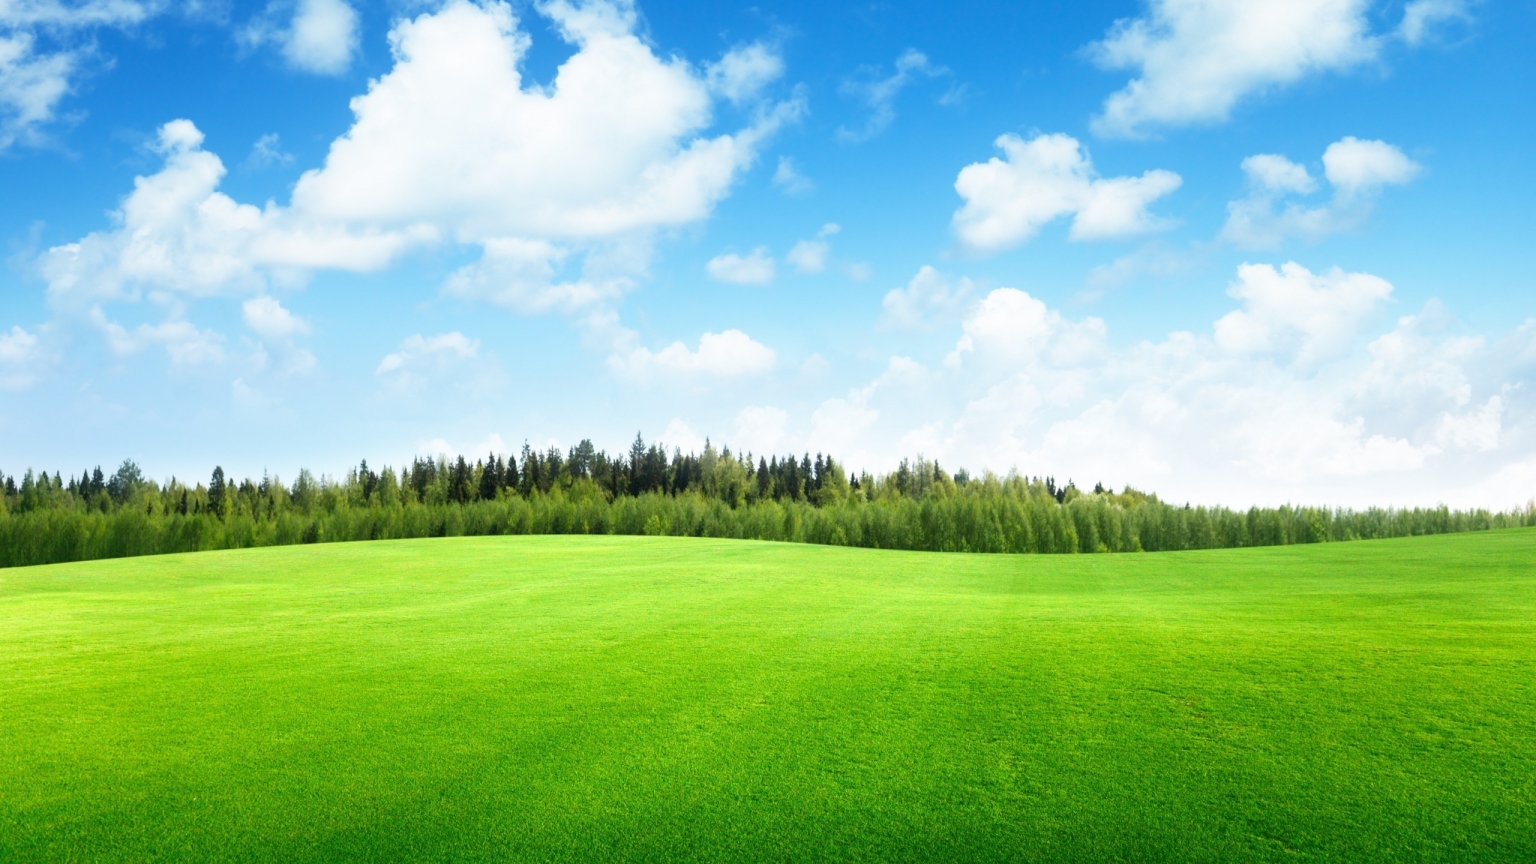 Beaufitul Green Grass Field for 1536 x 864 HDTV resolution